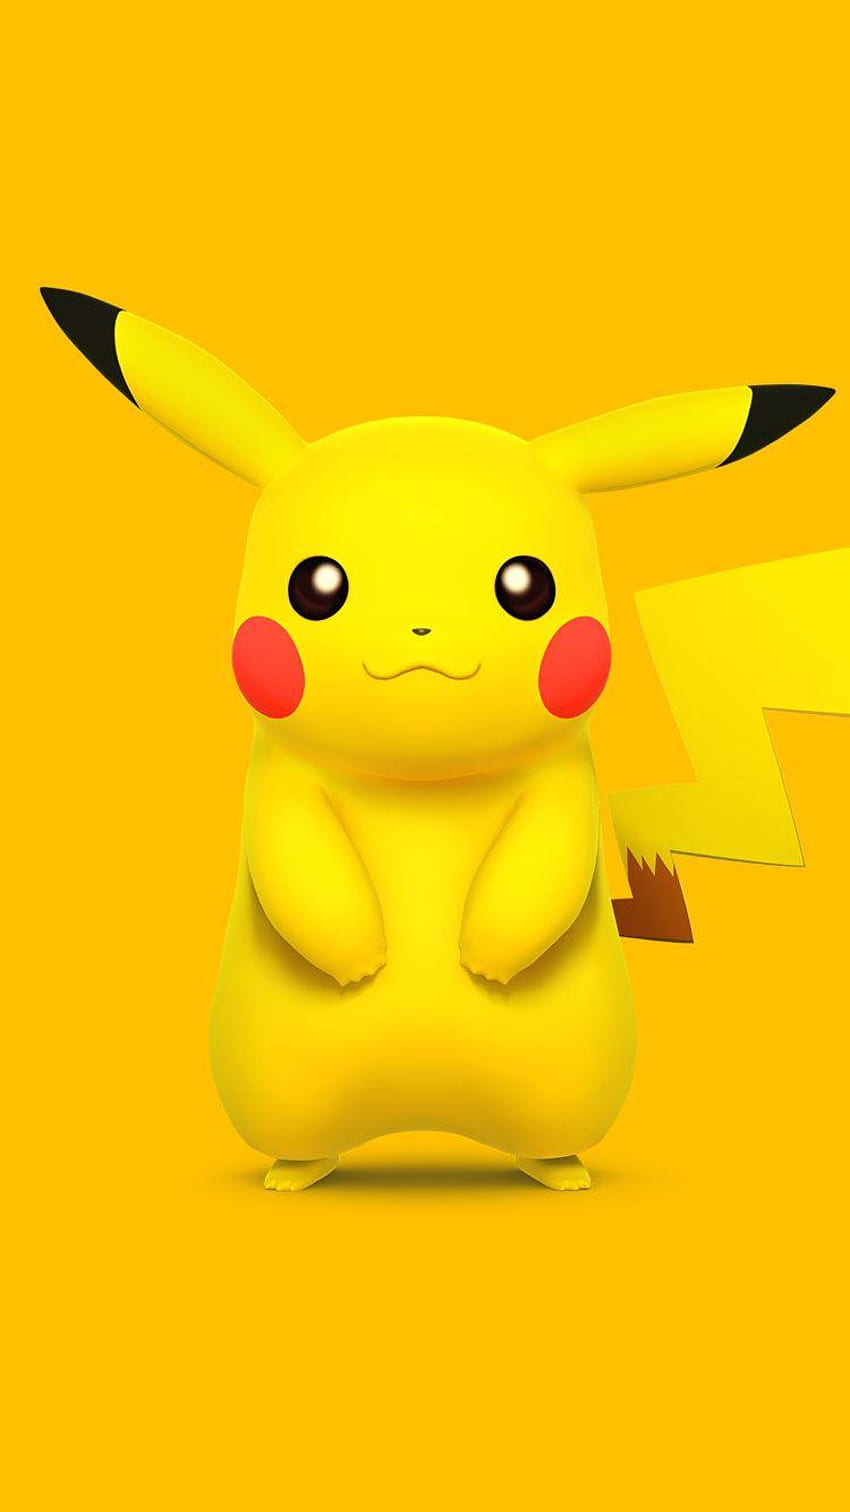 50 Pikachu iPhone Wallpaper  WallpaperSafari